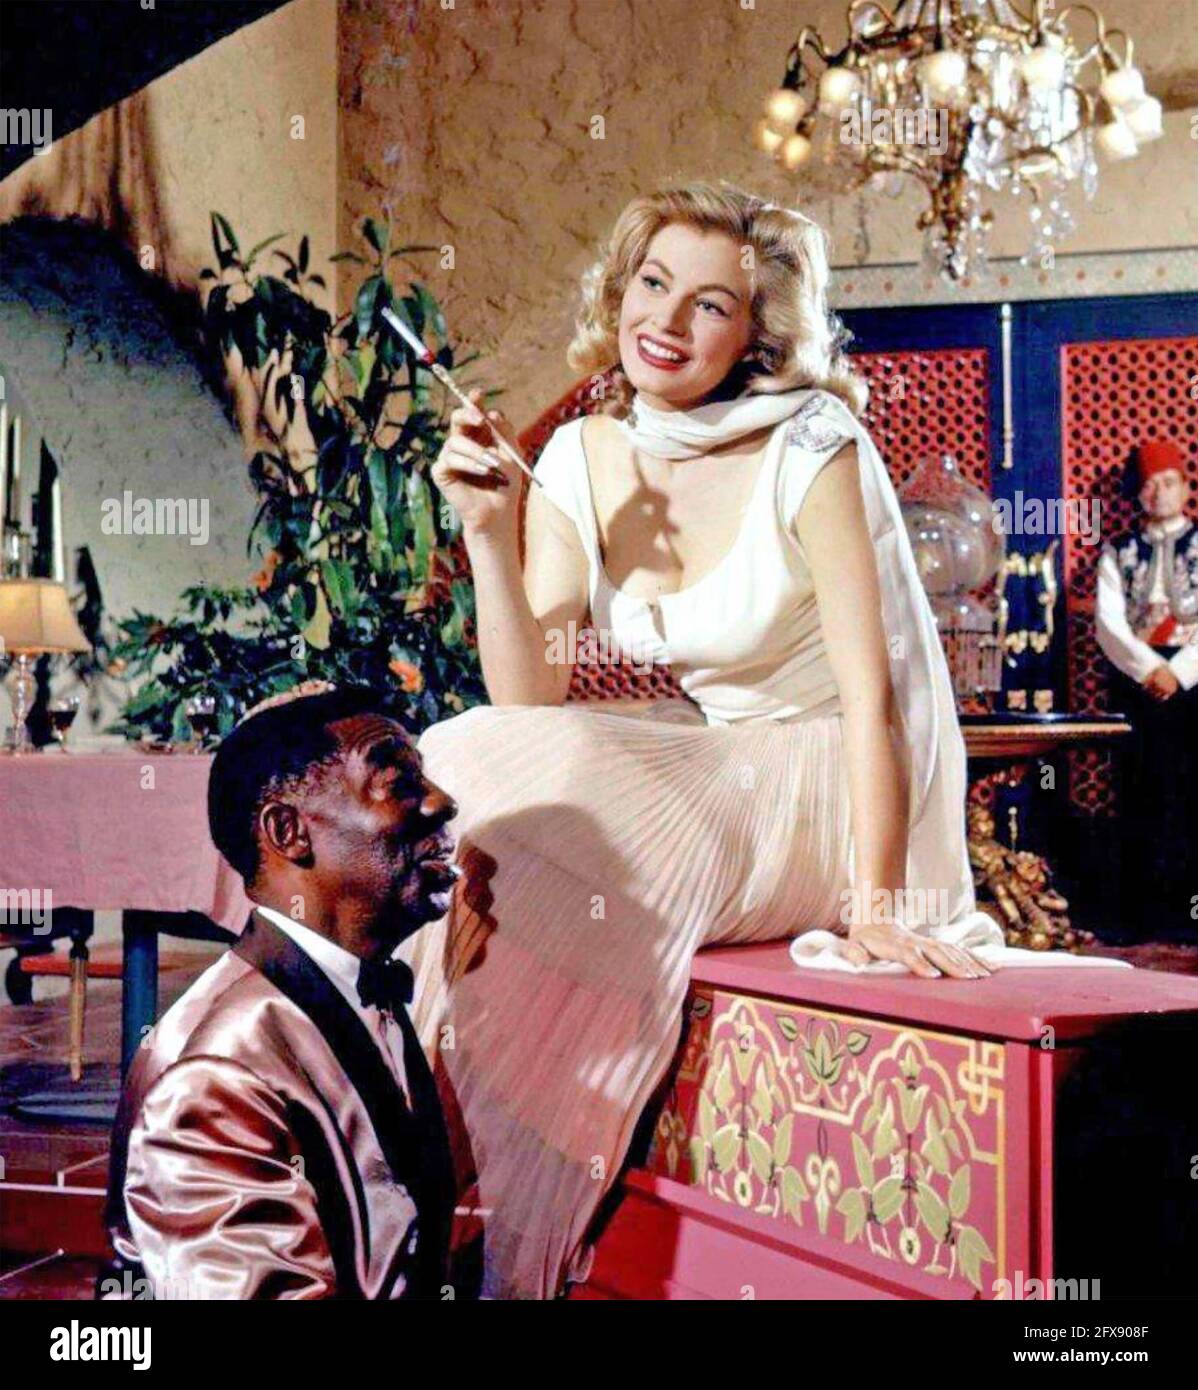 ANITA EKBERG (1931-2015) actrice suédoise de cinéma comme Katrina dans la version Warner Bros. 1955 du film Casablanca avec Clarence Muse sur piano Banque D'Images